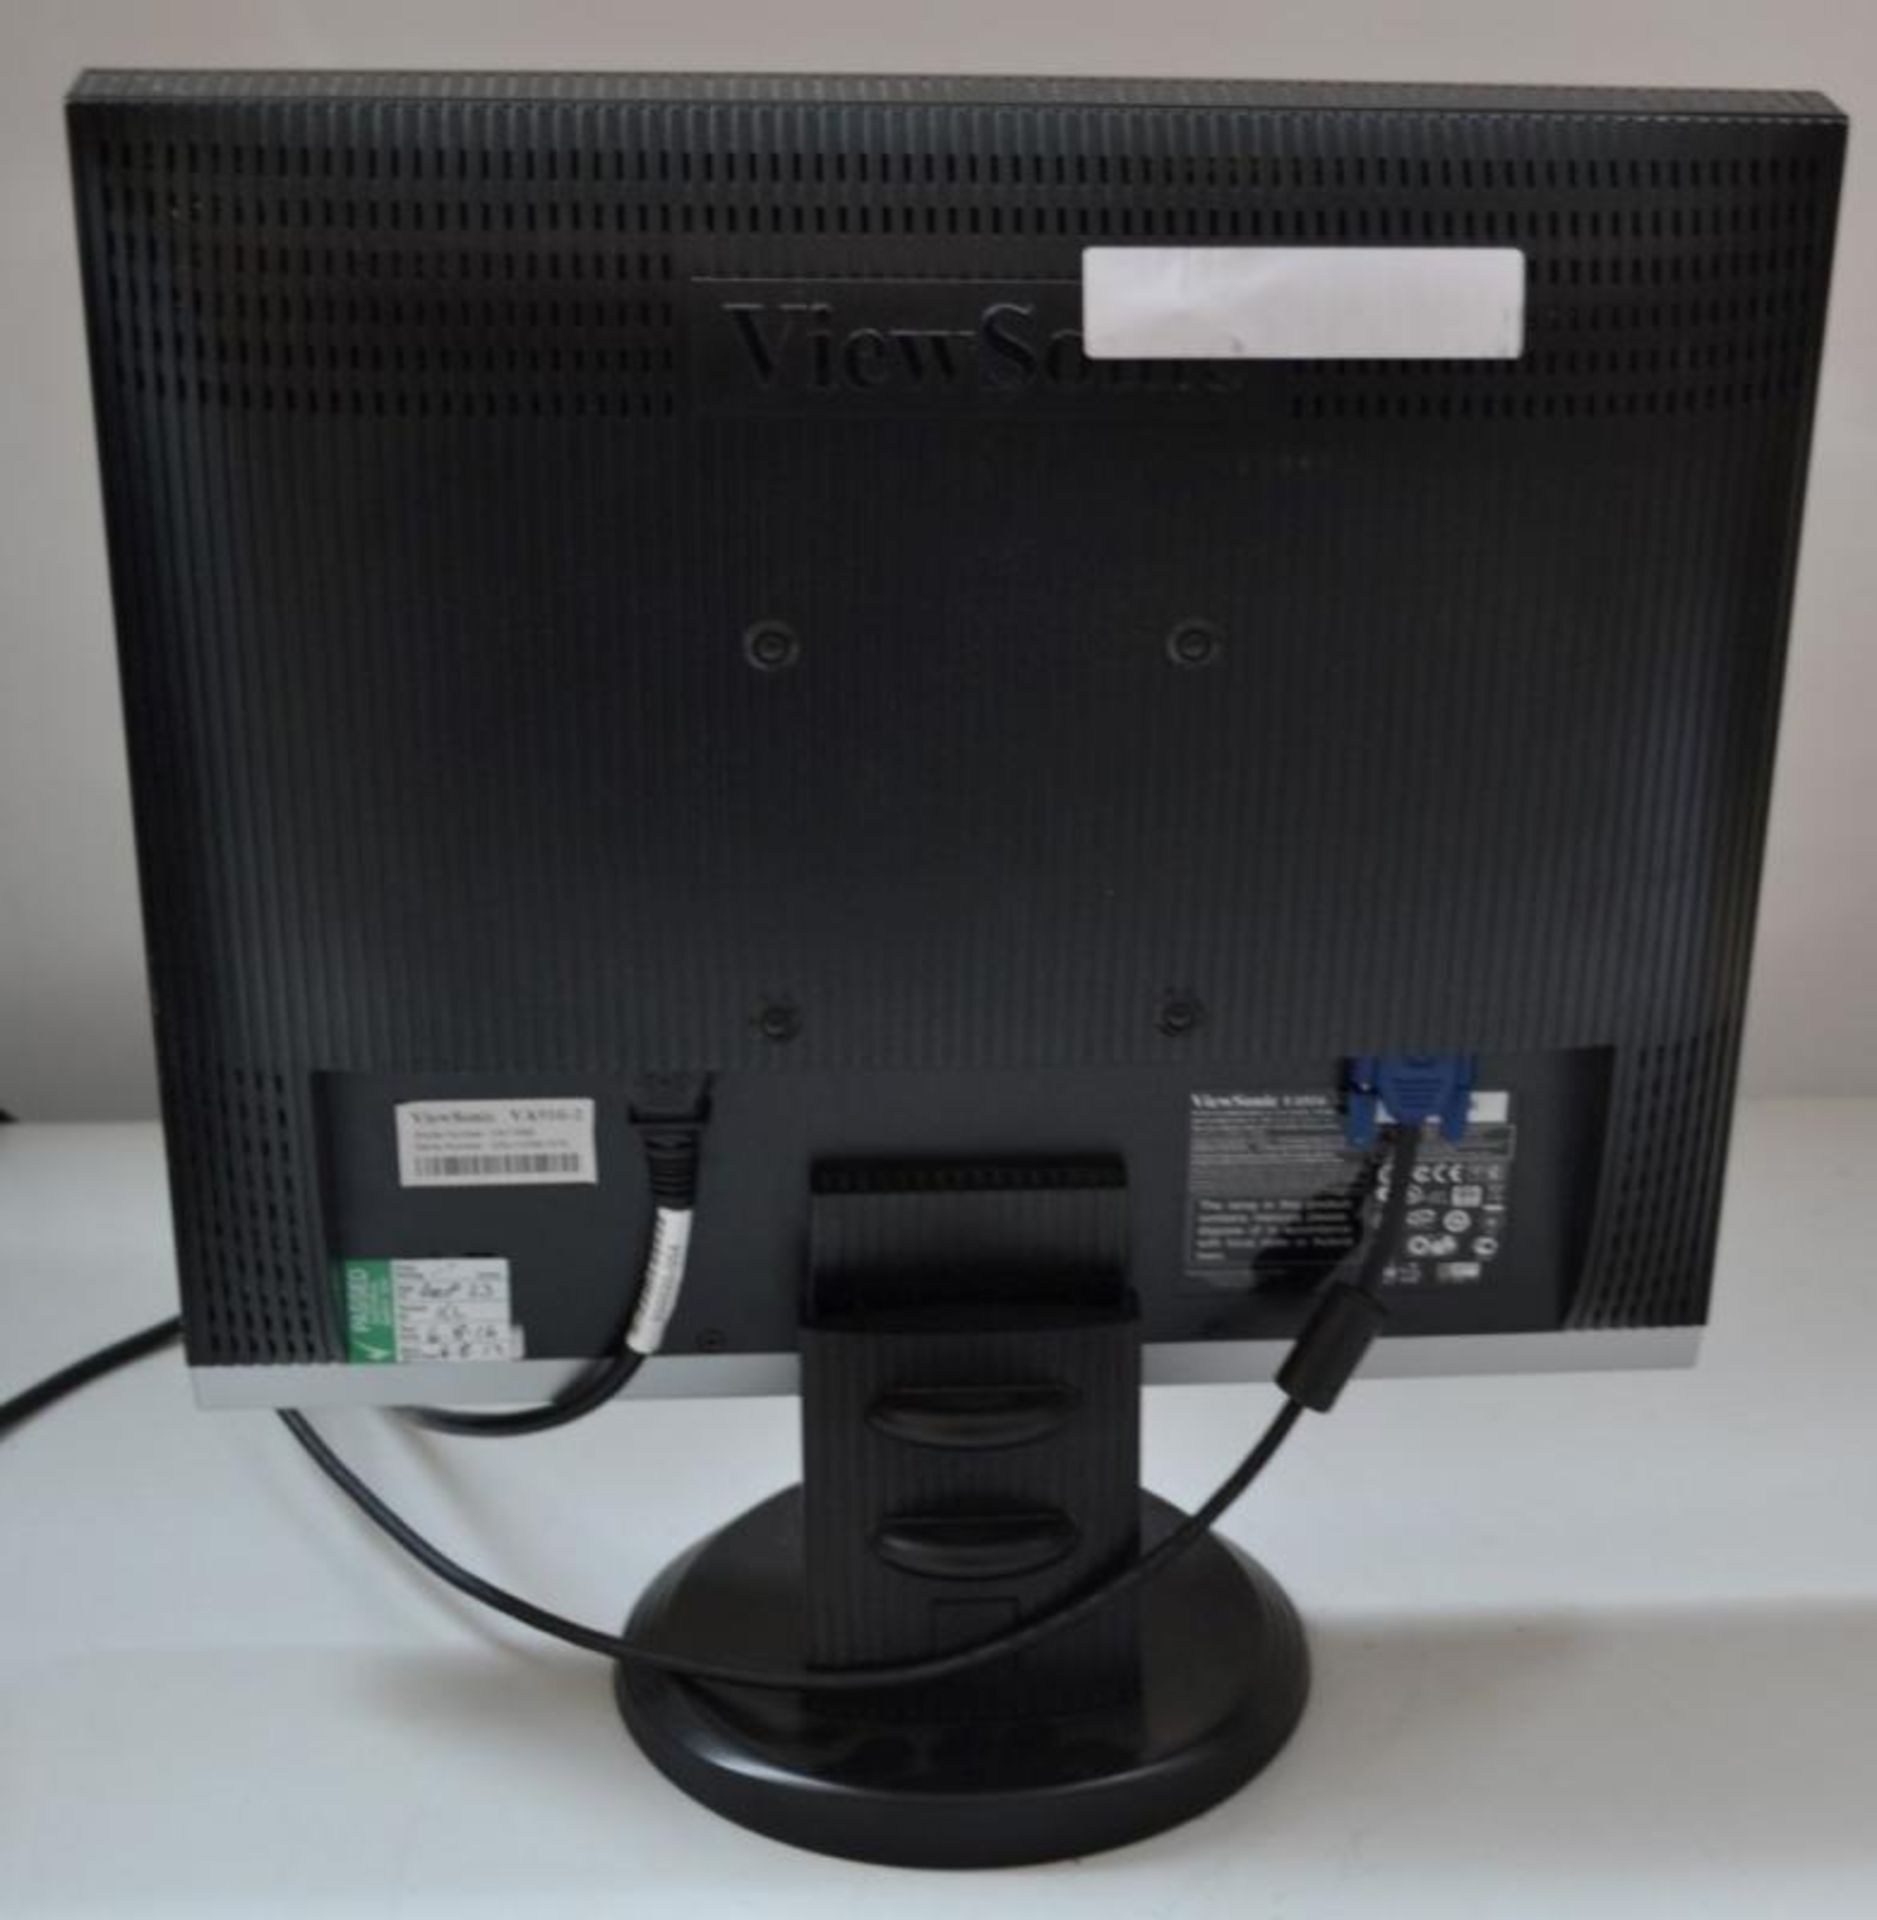 1 x ViewSonic VA916 19" LCD PC Monitor - Ref J2239 - CL394 - Location: Altrincham WA14 - HKPal2 - Bild 2 aus 3